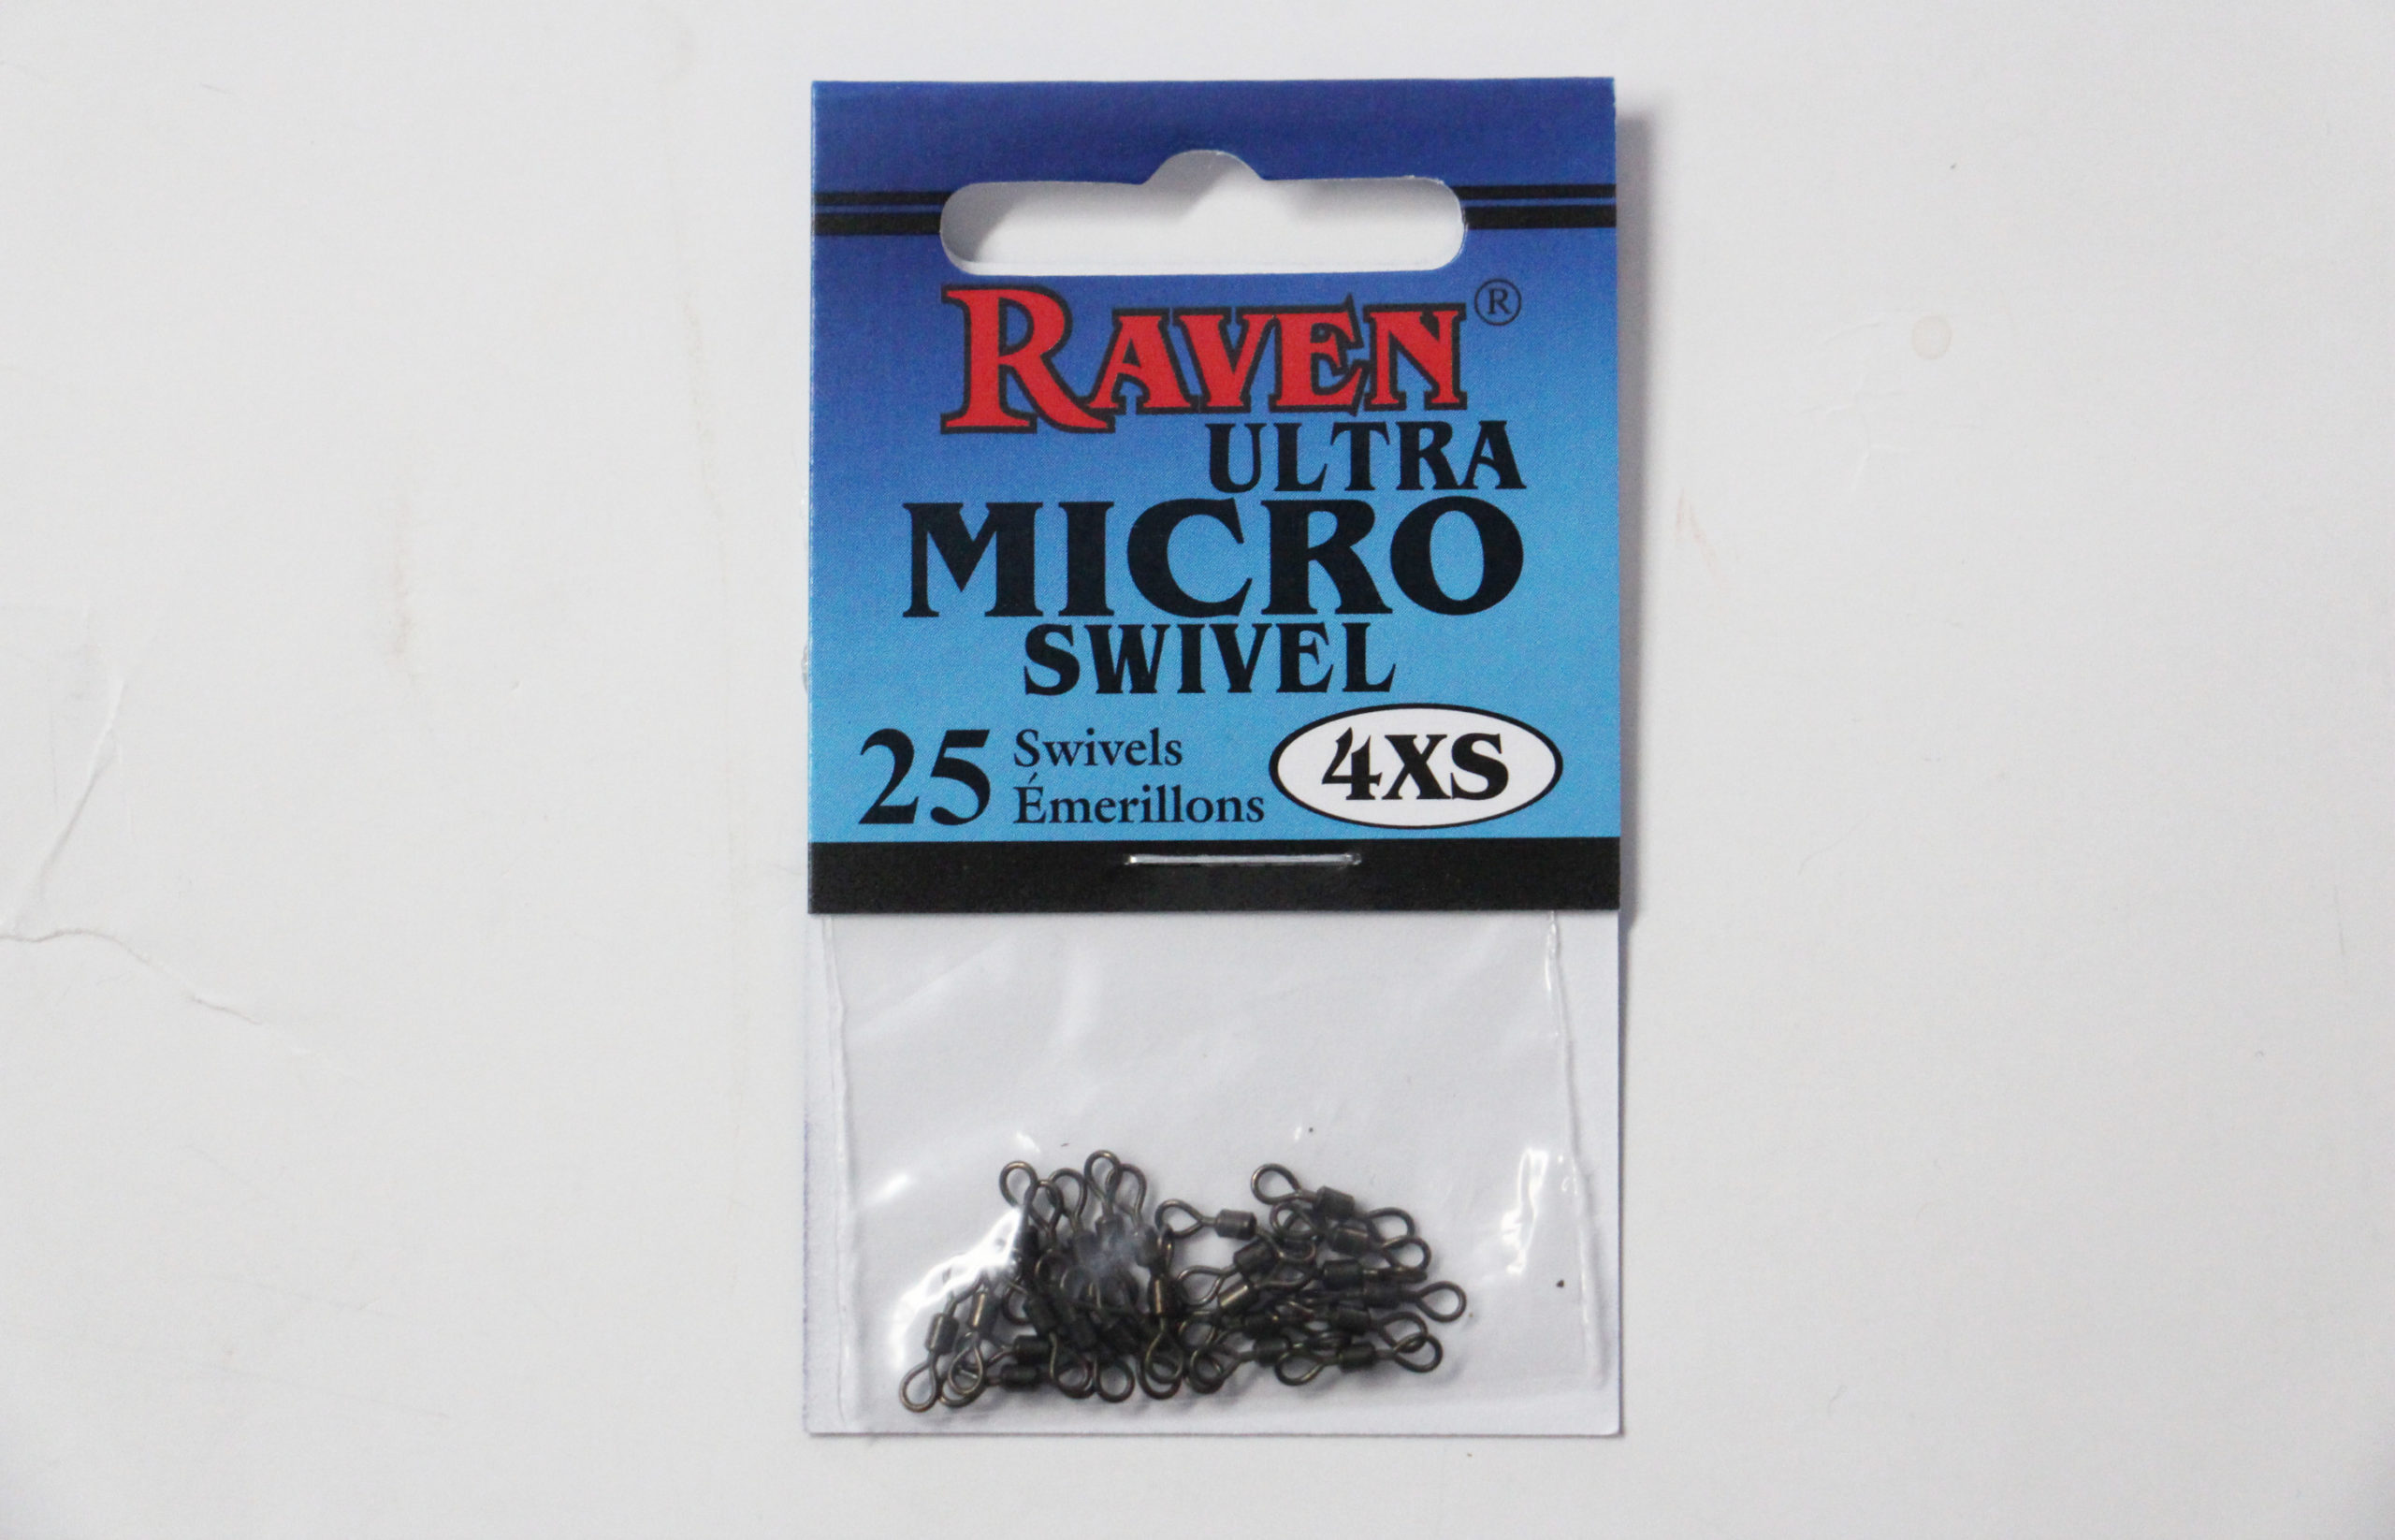 Raven 4XS Micro Swivels